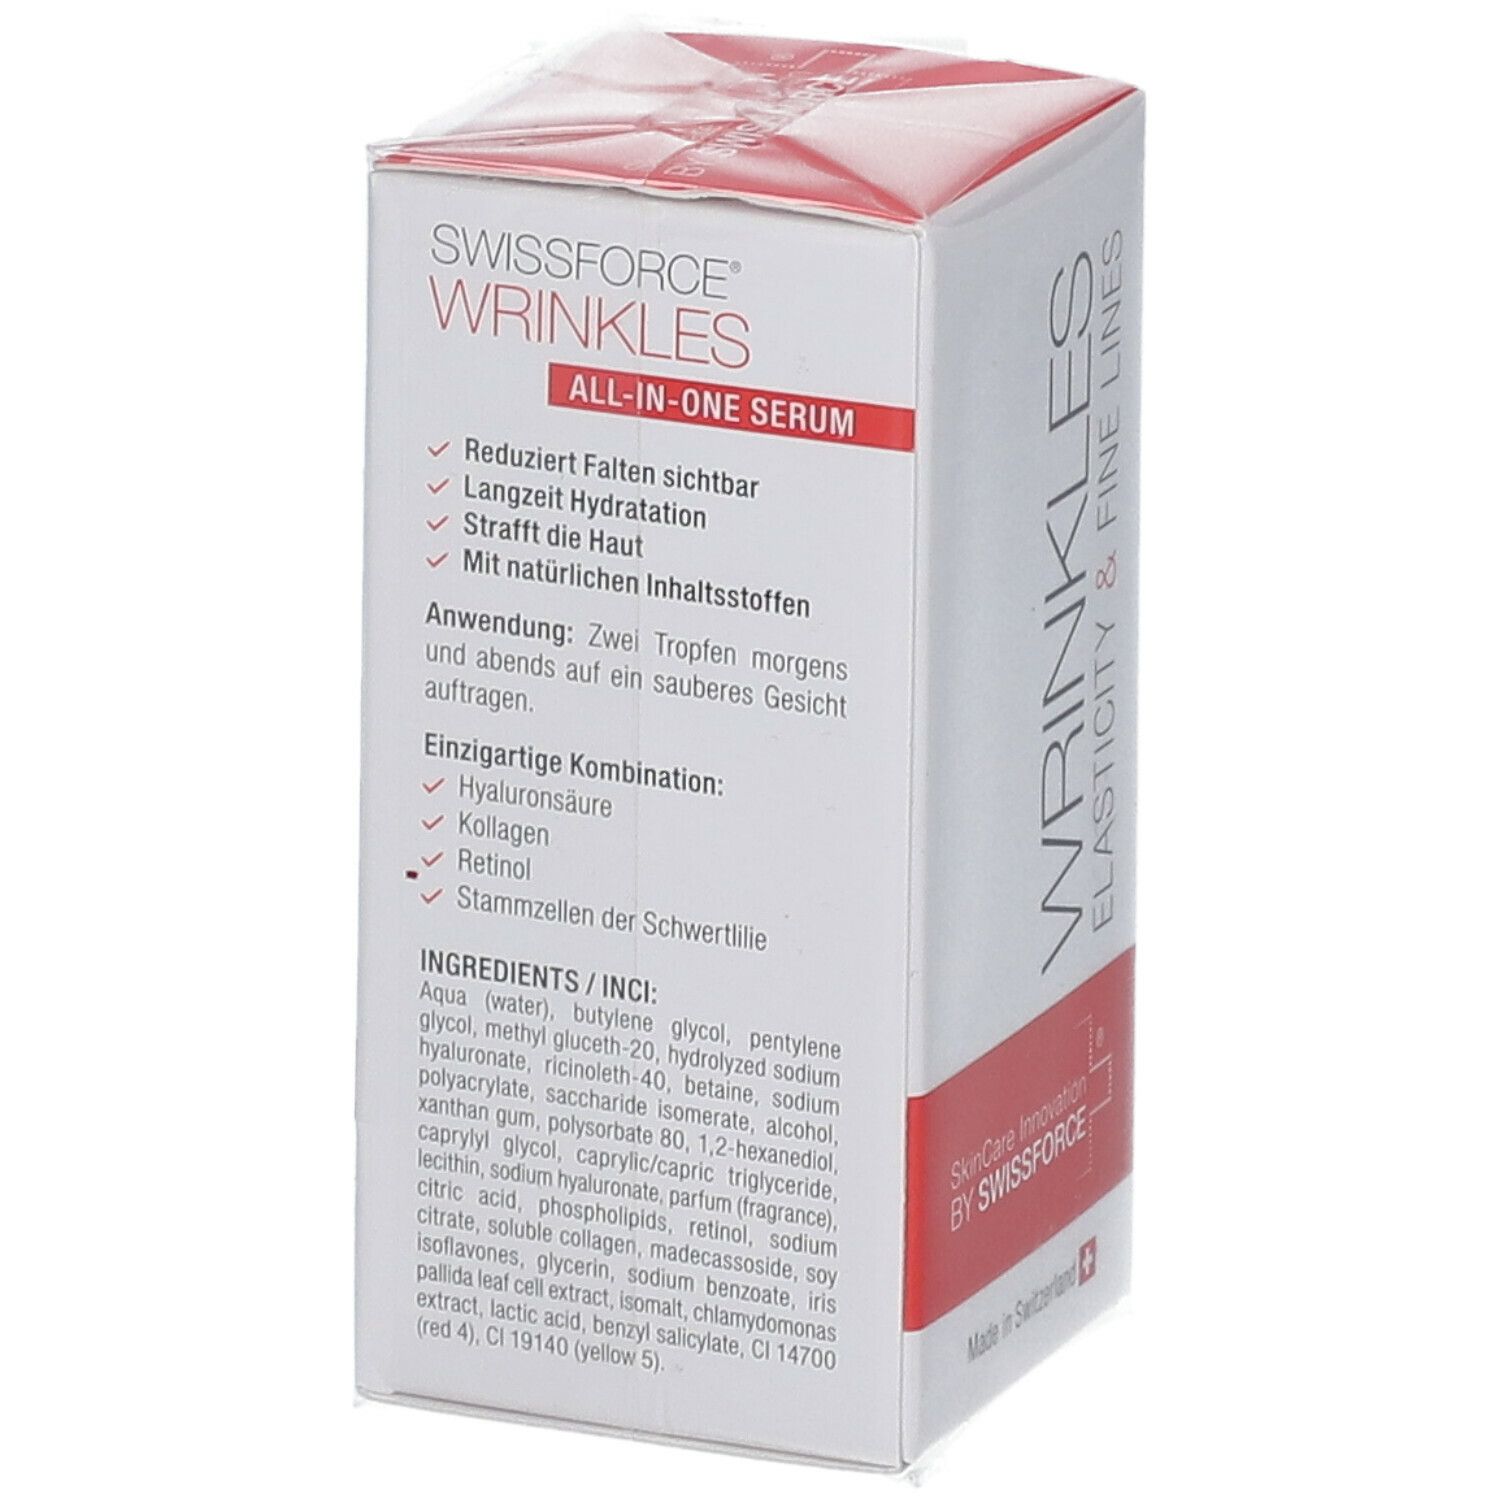 Wrinkles All-In-One Serum